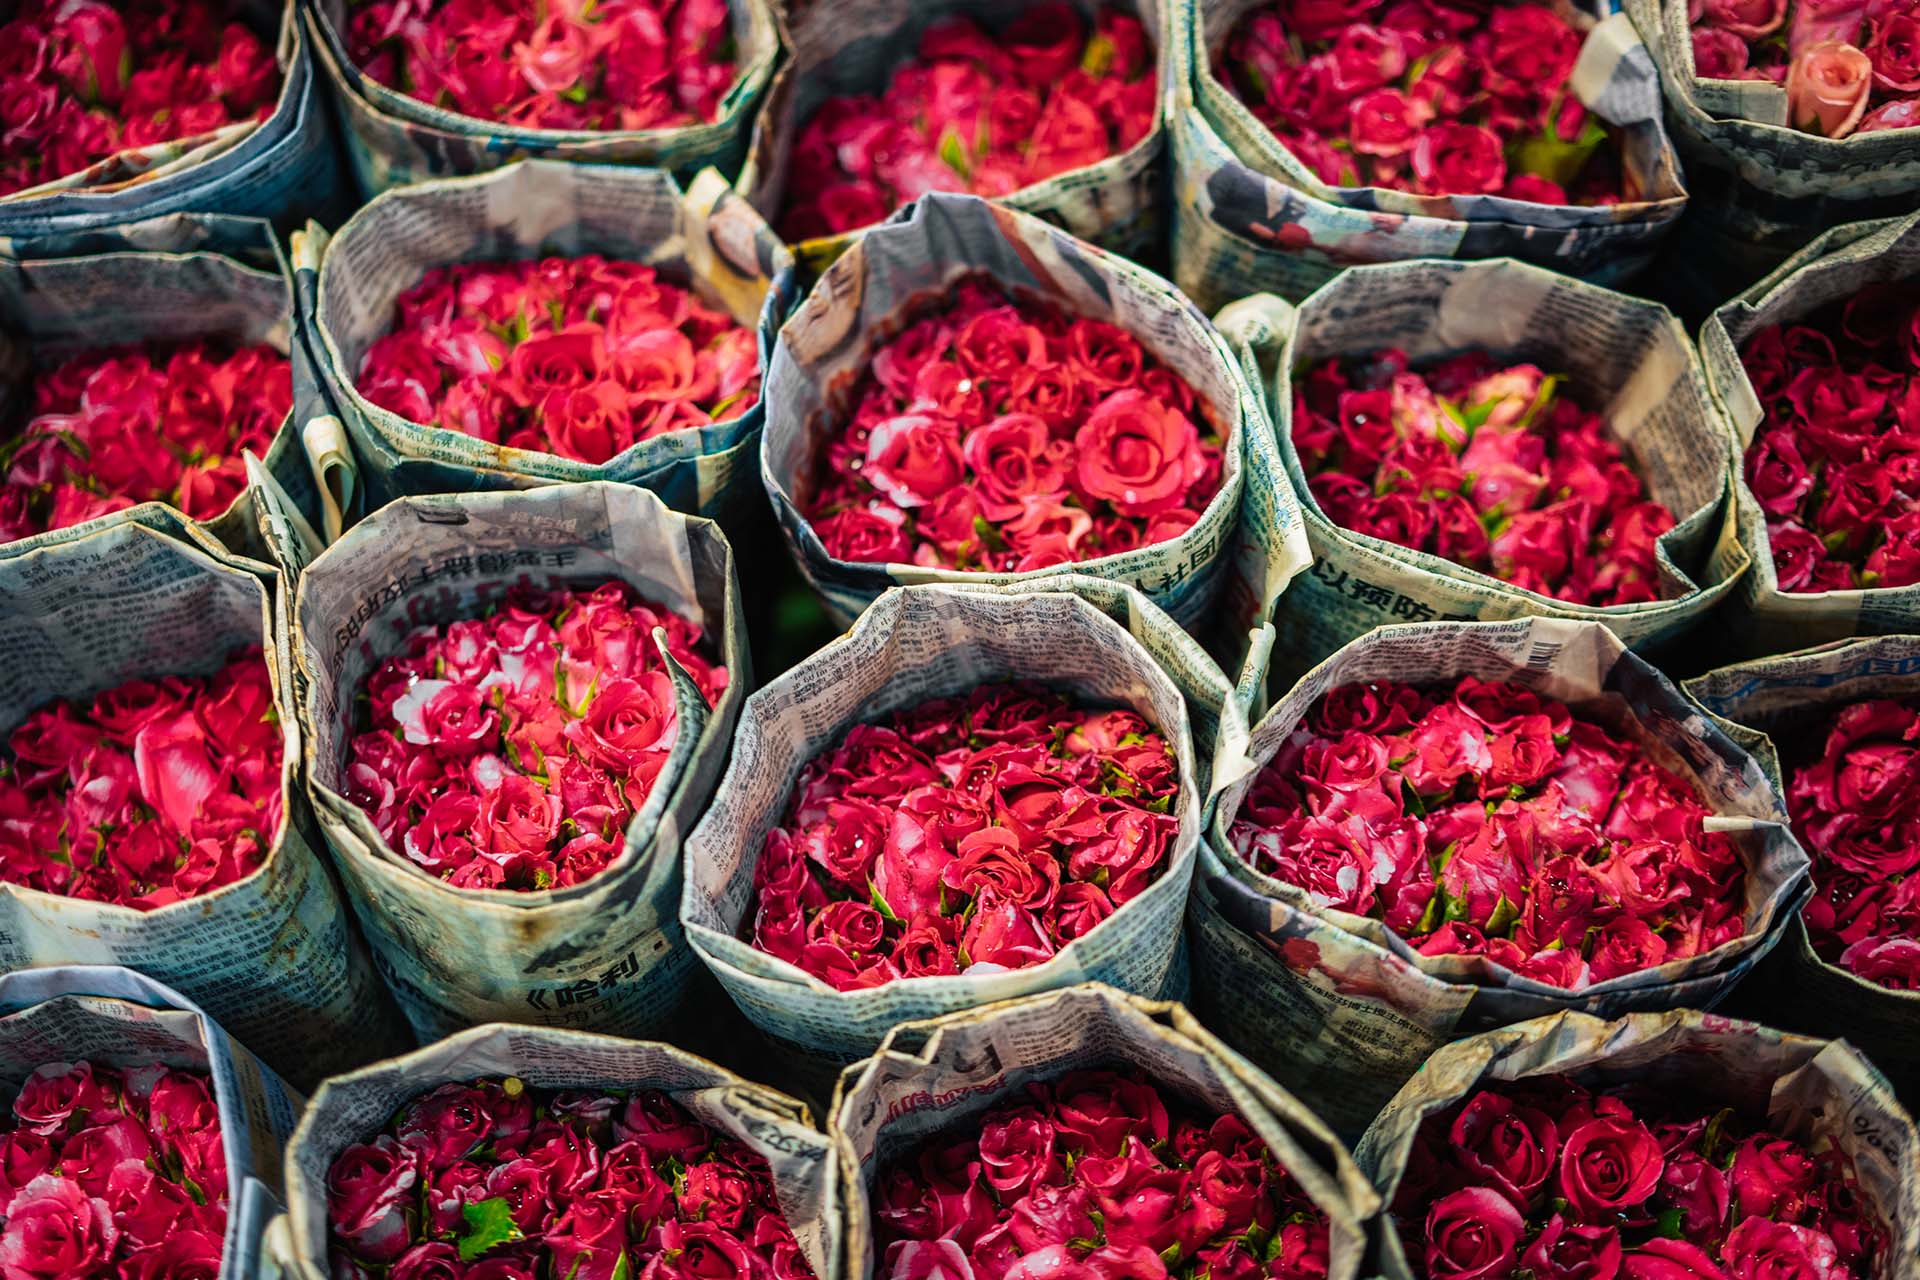 Tour markten Bangkok: van bloemenmarkt tot hippe nachtmarkt